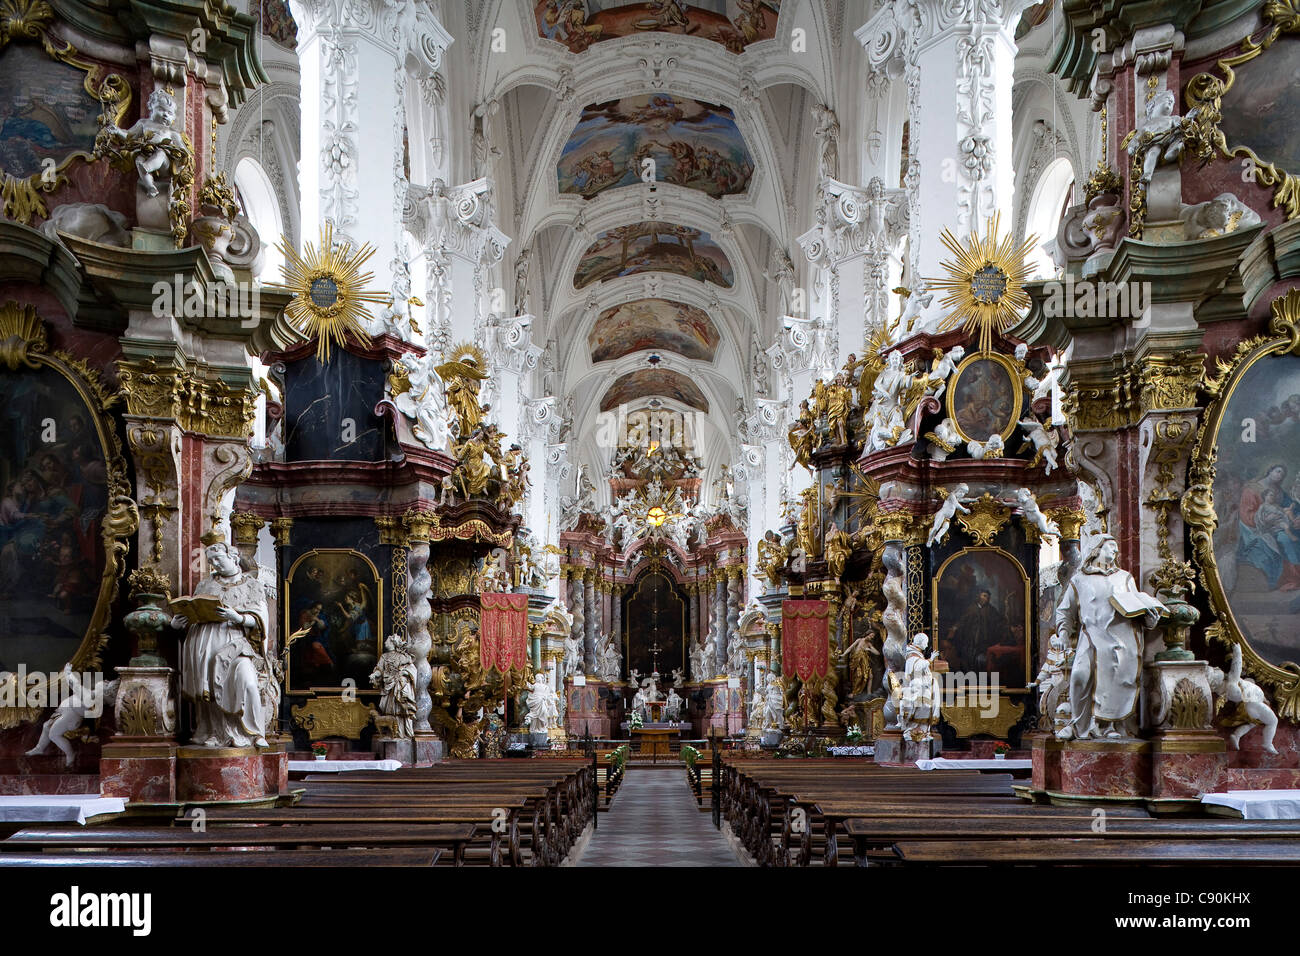 Innenansicht des Klosters Neuzelle, Zisterzienser-Kloster in der Nähe von München, Niederlausitz, Brandenburg, Deutschland, Europa Stockfoto